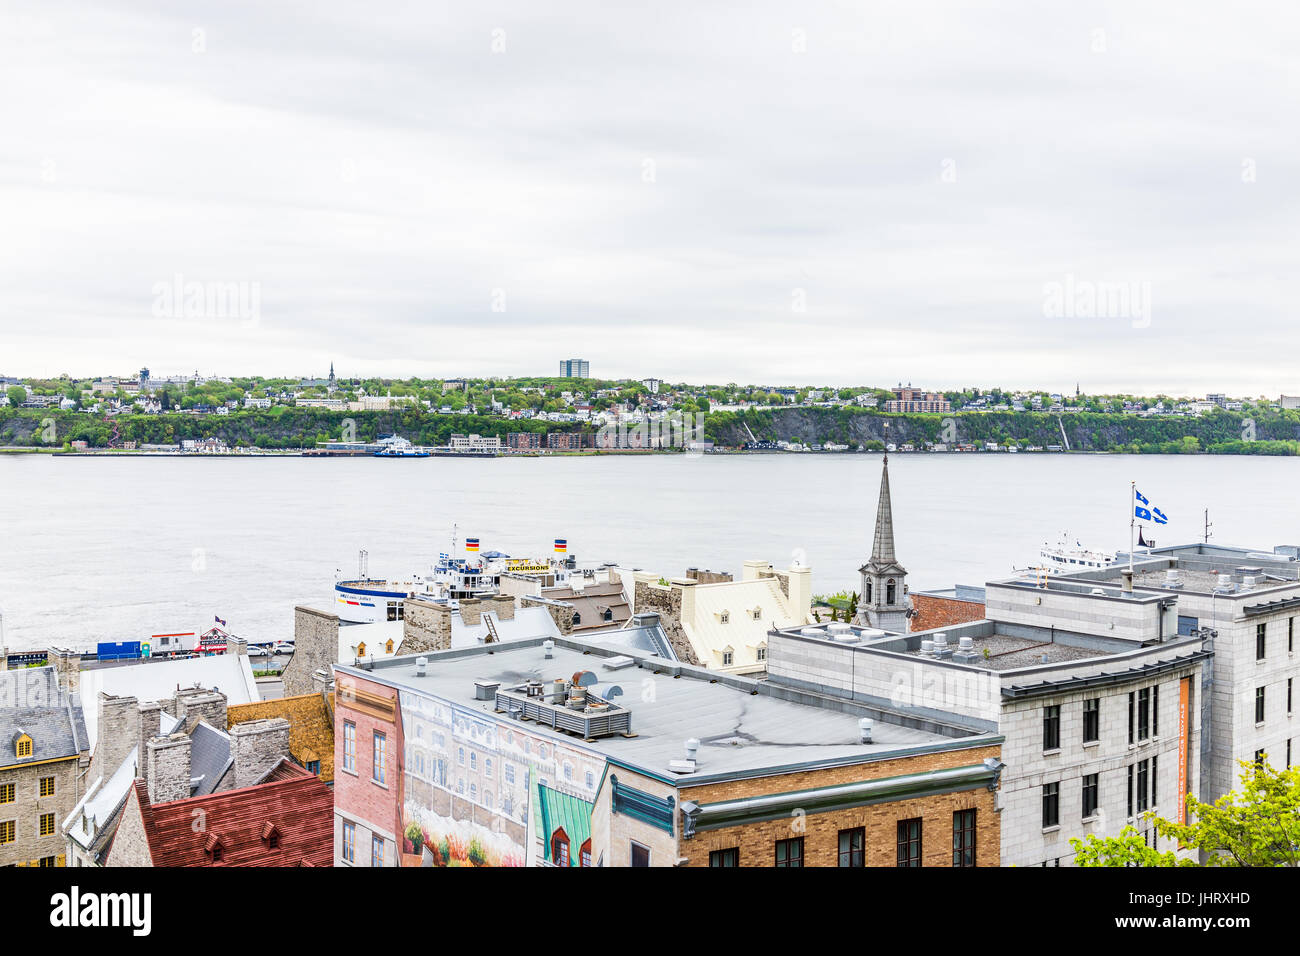 La ville de Québec, Canada - 30 mai 2017 : Paysage urbain ou des toits de bâtiments de la vieille ville basse avec vue sur le fleuve Saint-Laurent Banque D'Images